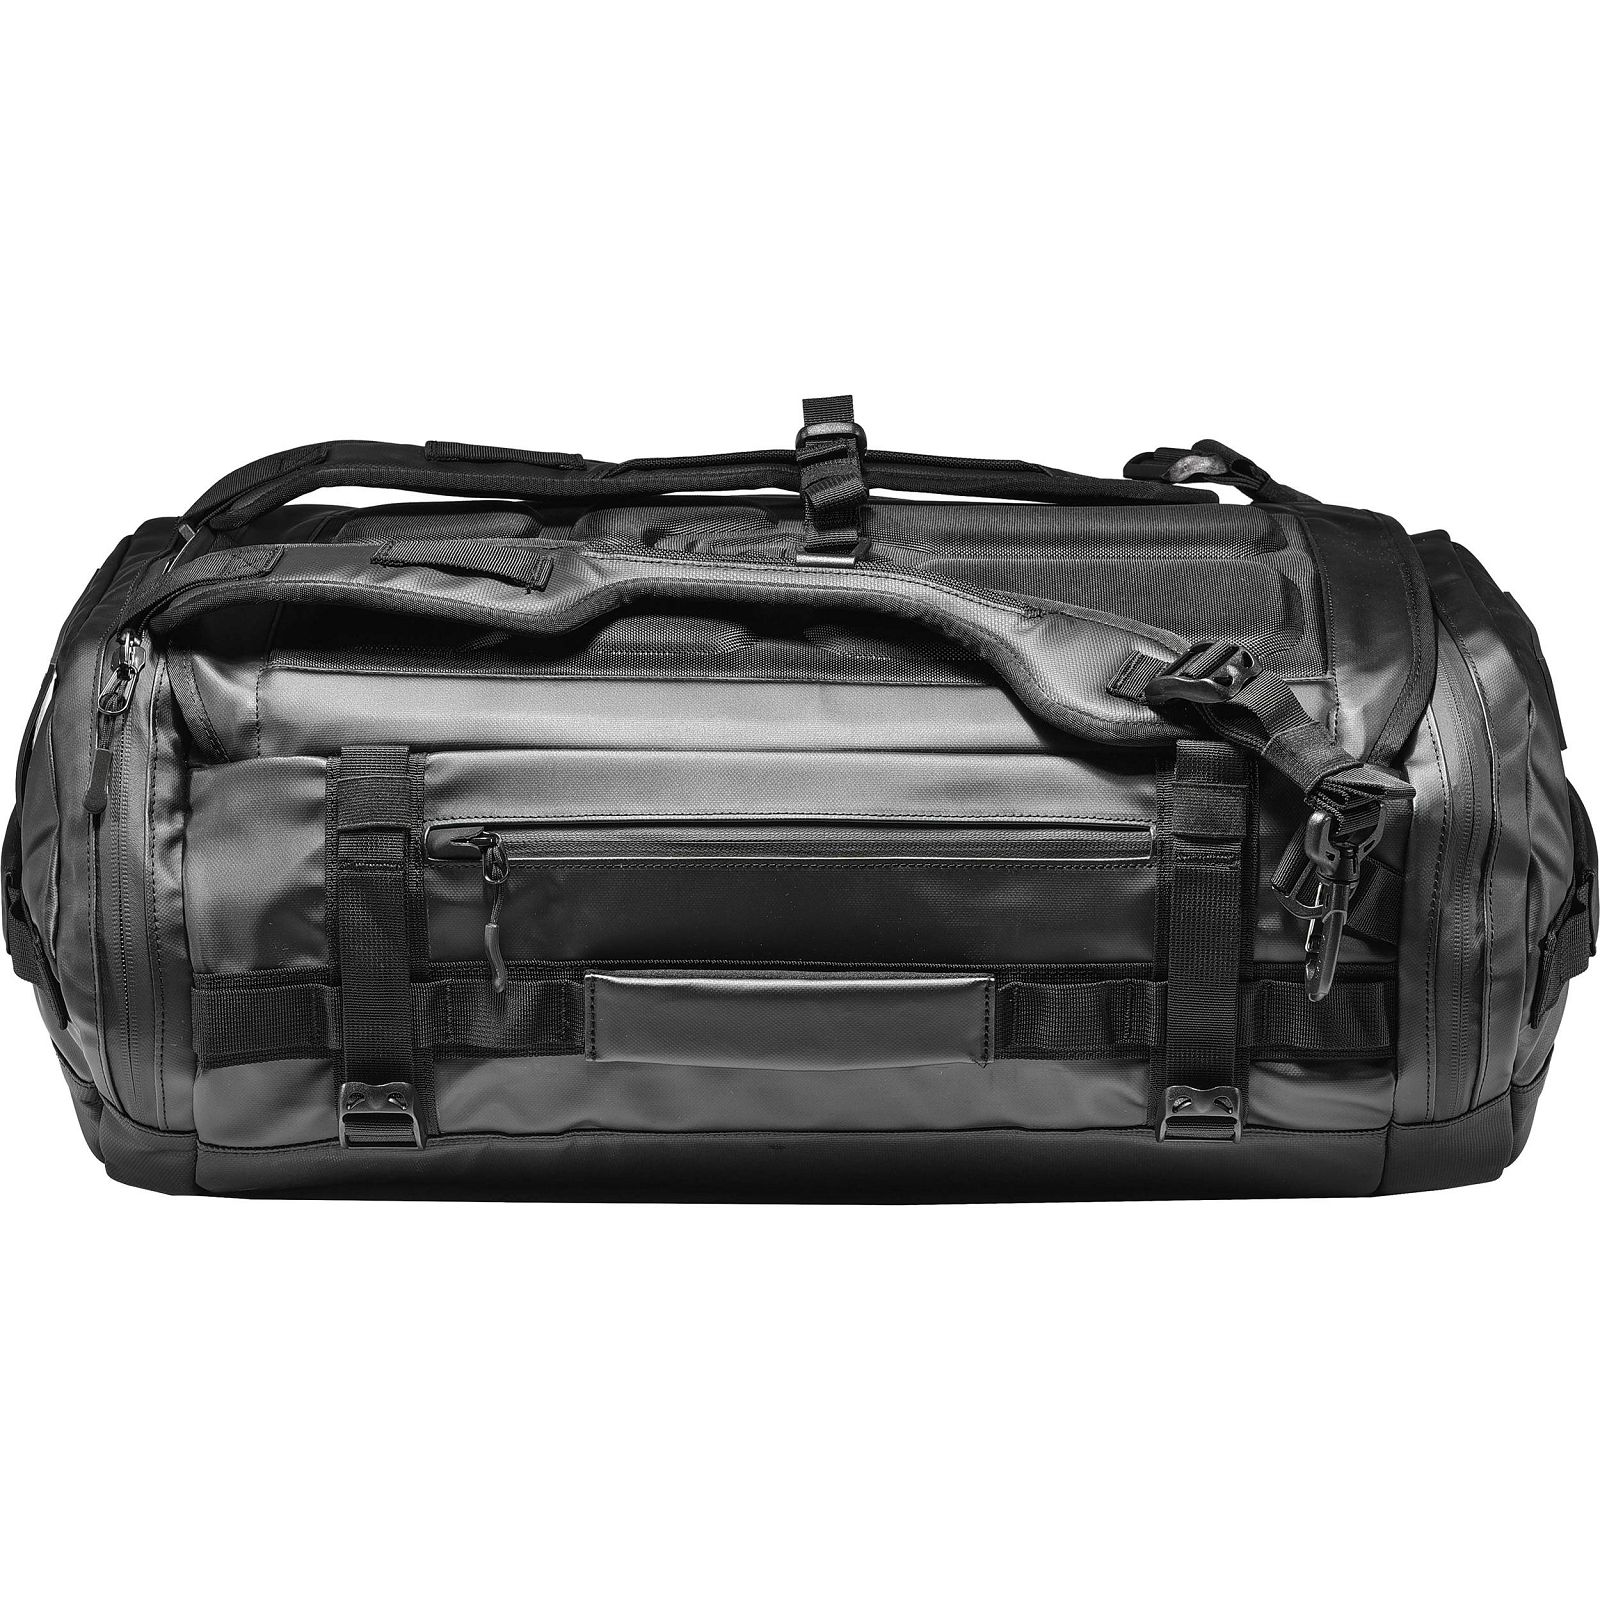 Wandrd Hexad Carryall Duffel 40l putni ruksak torba za foto opremu